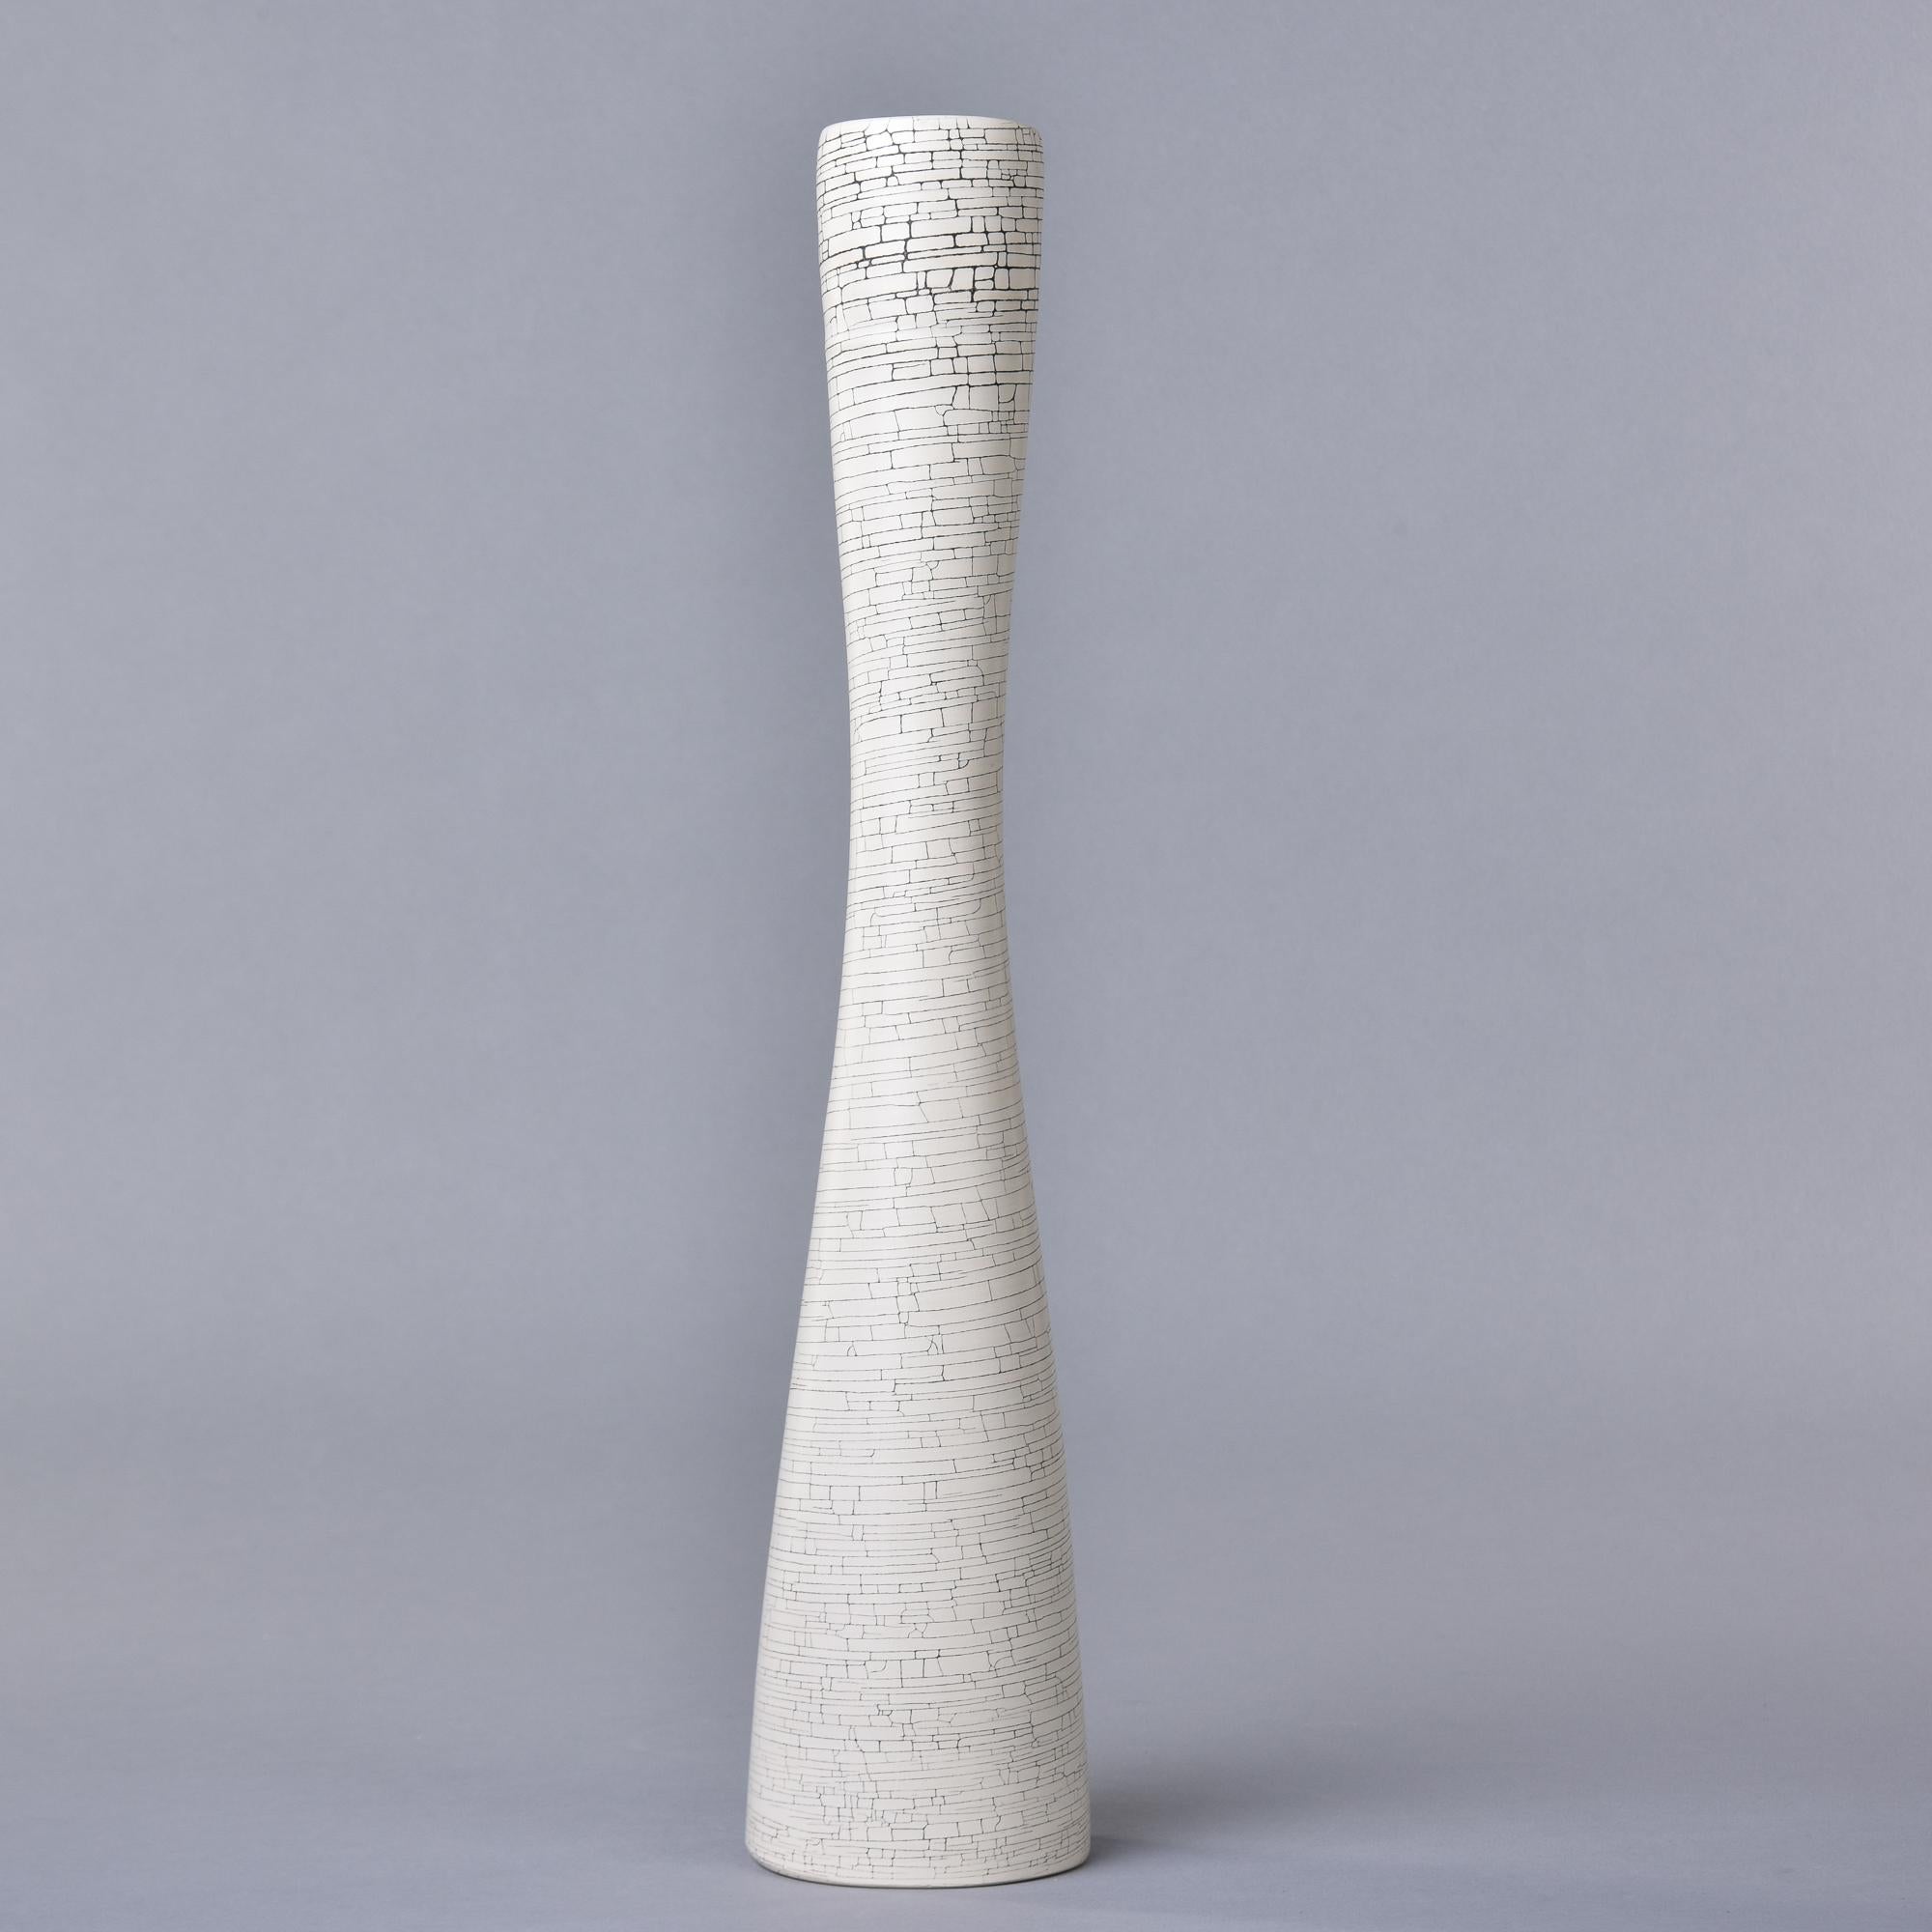 Neu und in Italien von Rina Menardi hergestellt, ist diese große schlanke Vase 18